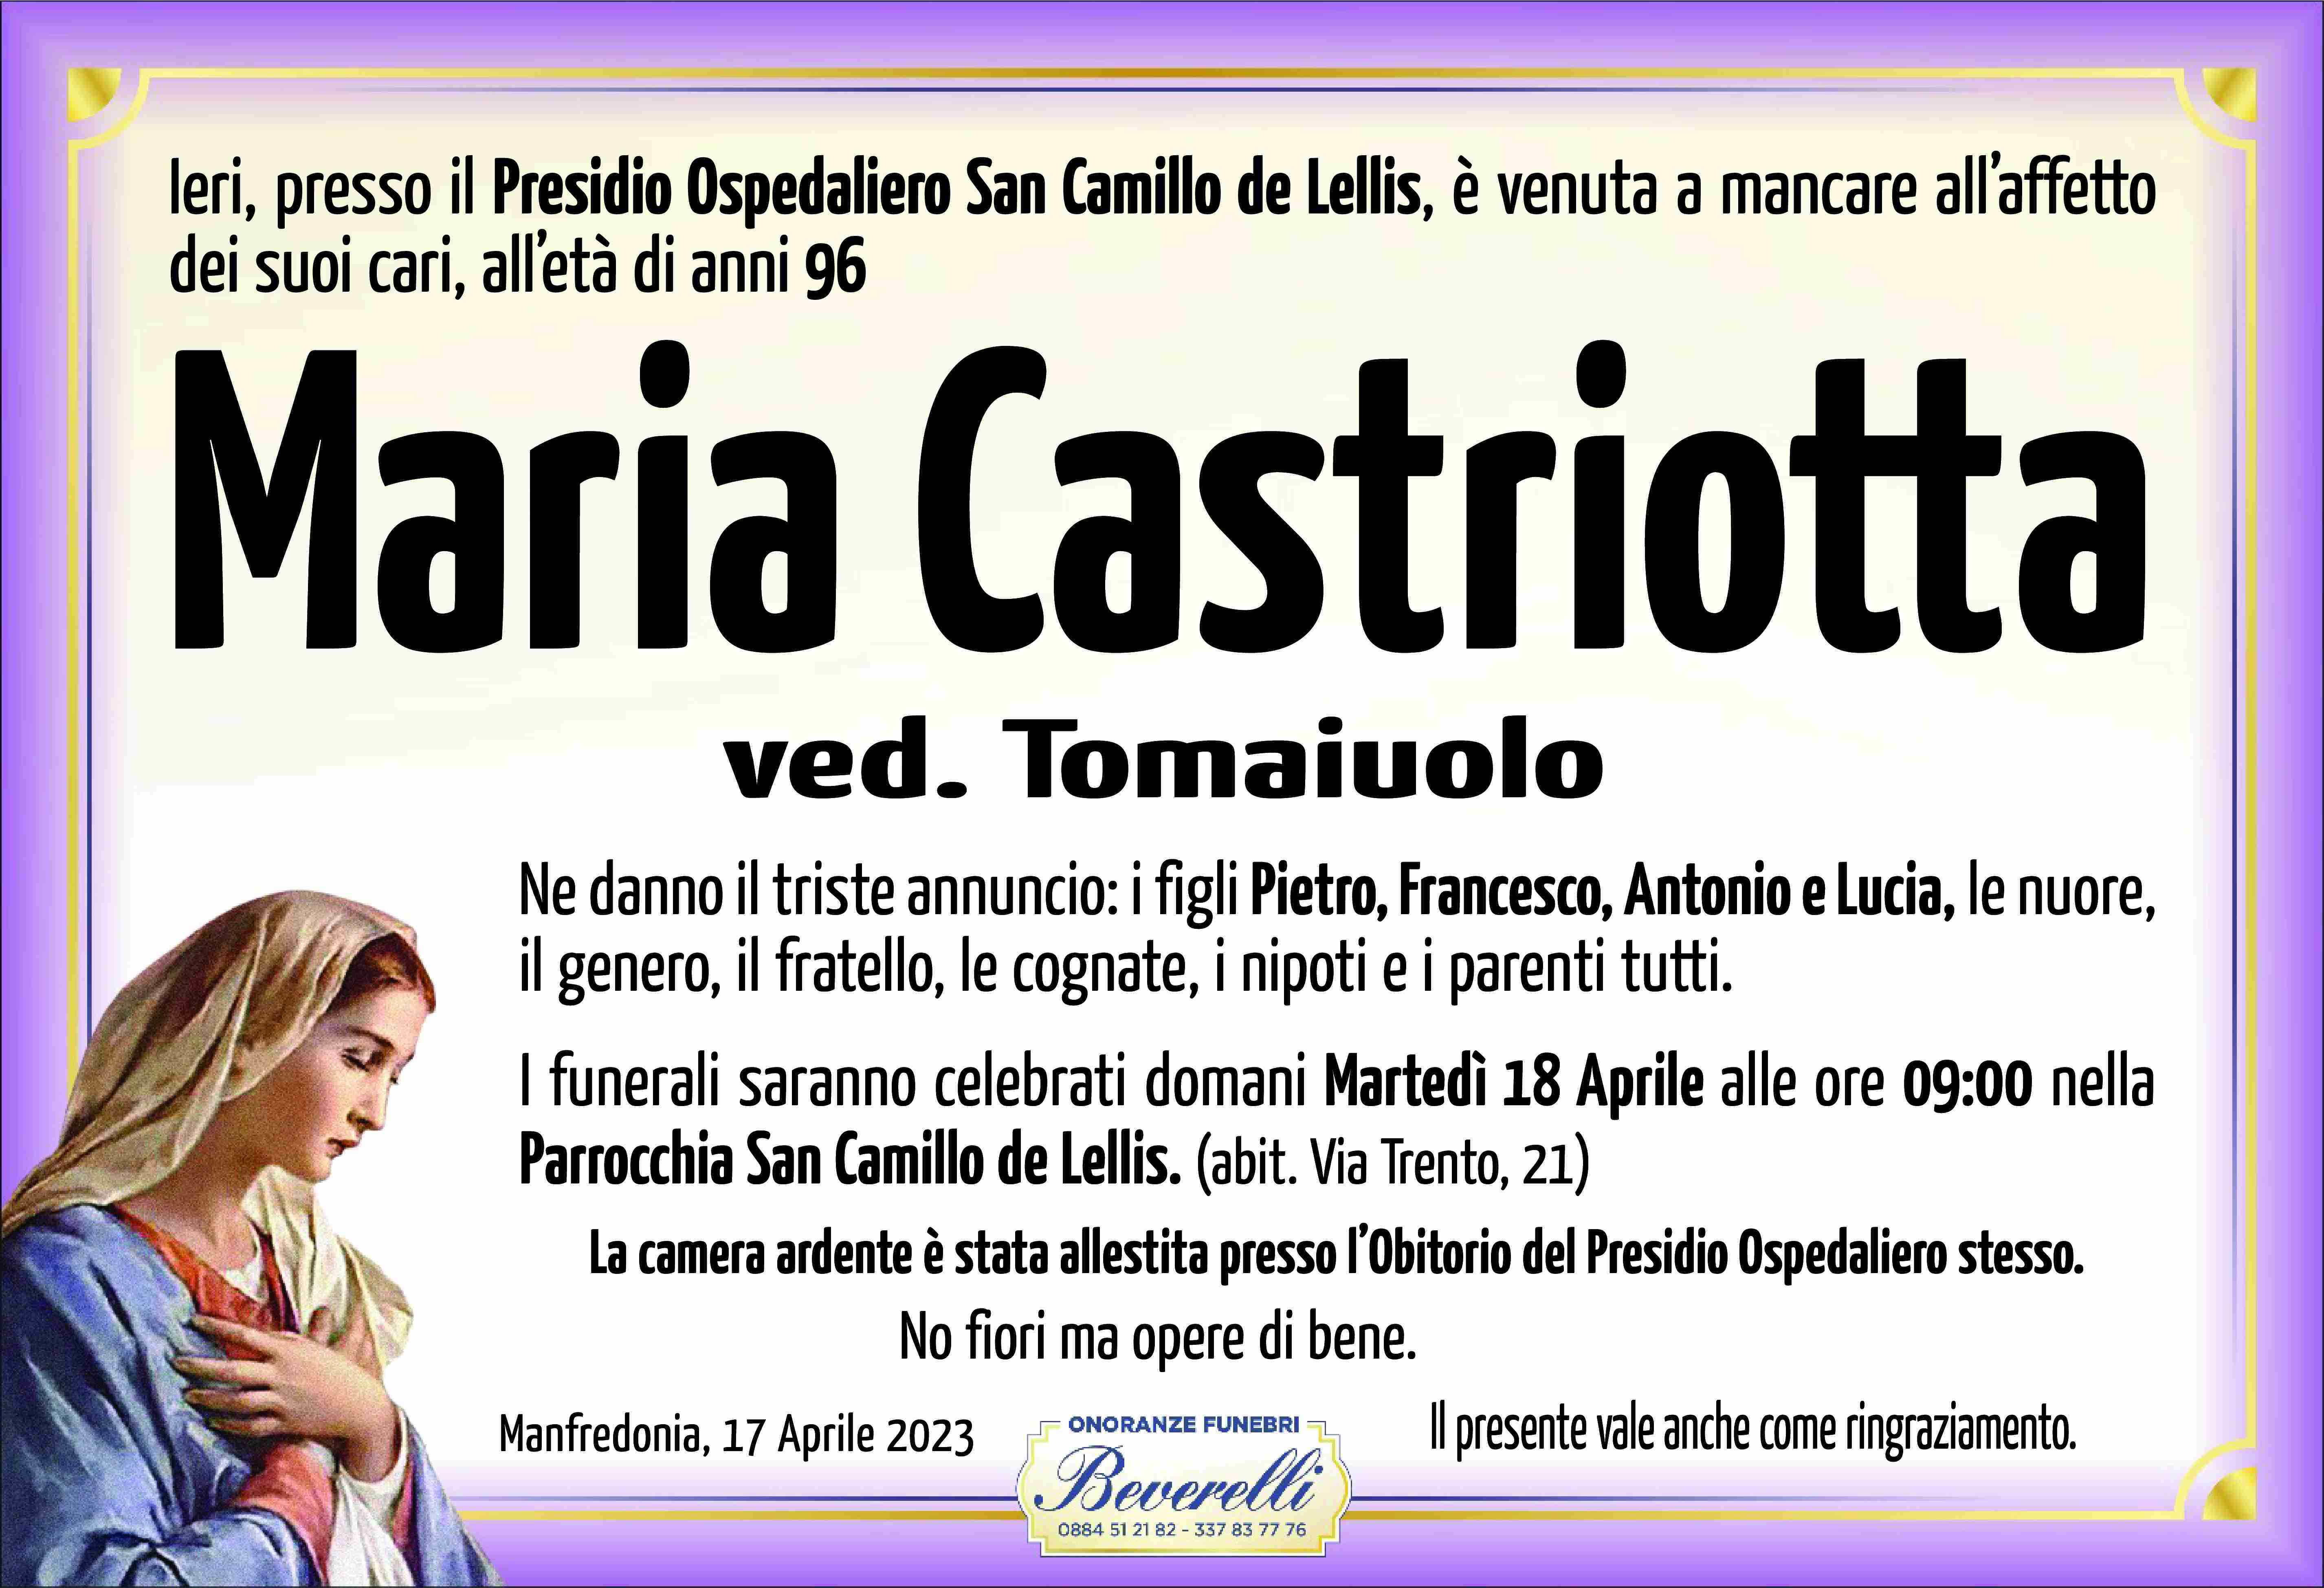 Maria Castriotta